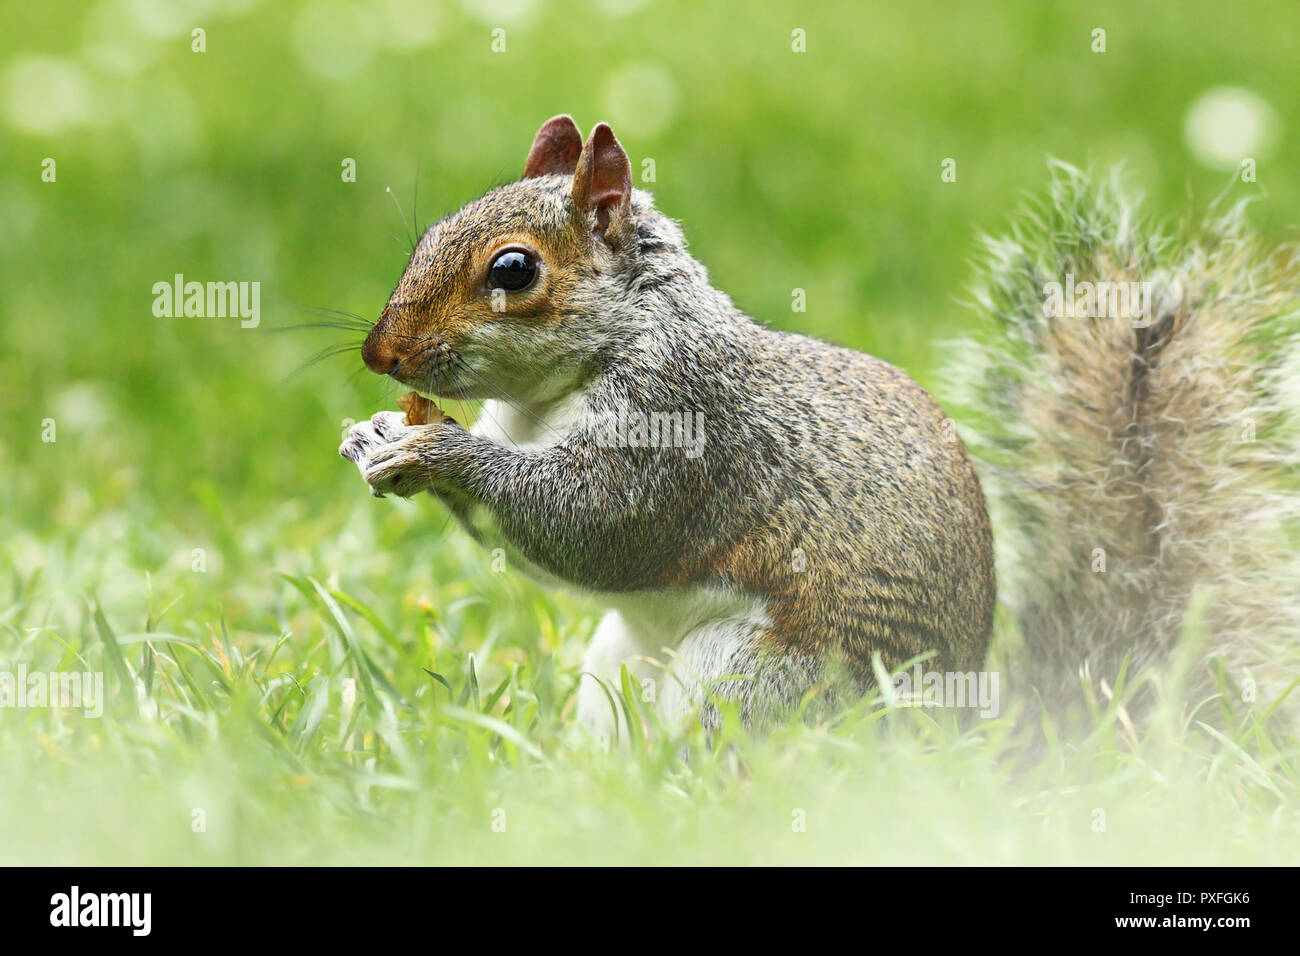 Carino scoiattolo grigio in erba, mangiando il dado ( Sciurus carolinensis a piena lunghezza ) Foto Stock